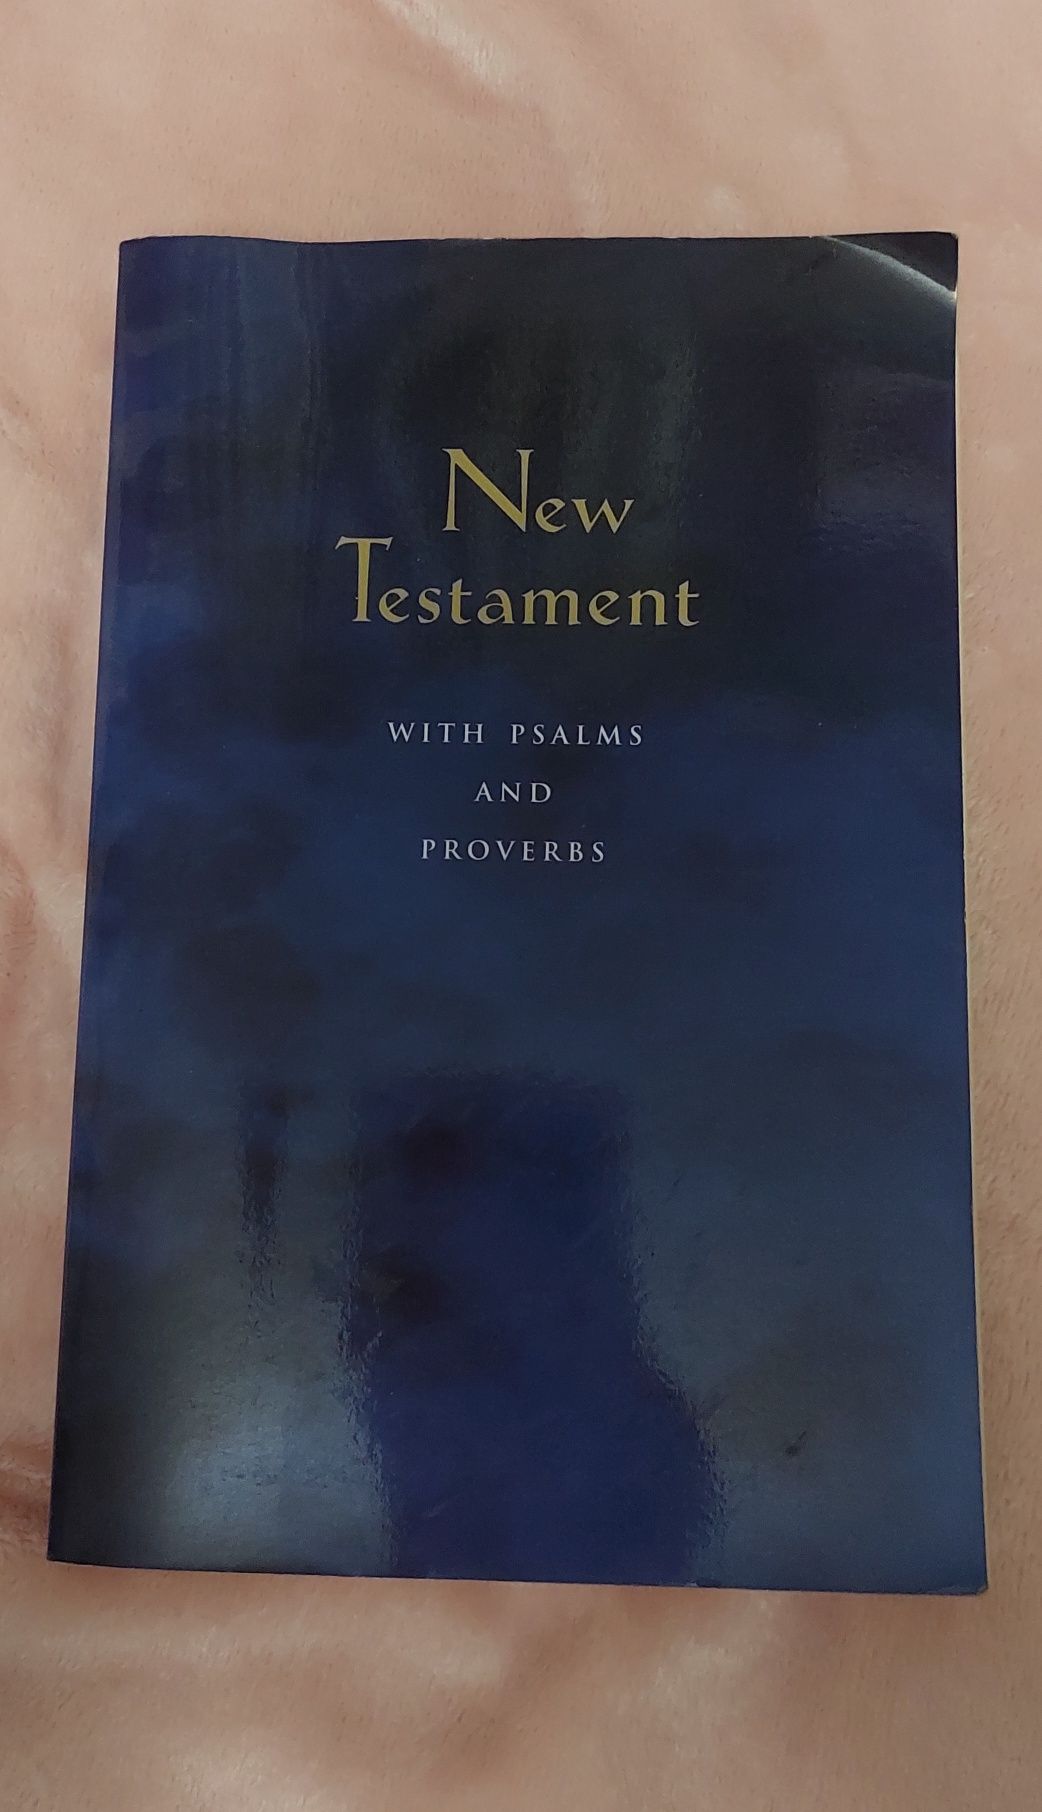 "Новый завет" "New Testament"